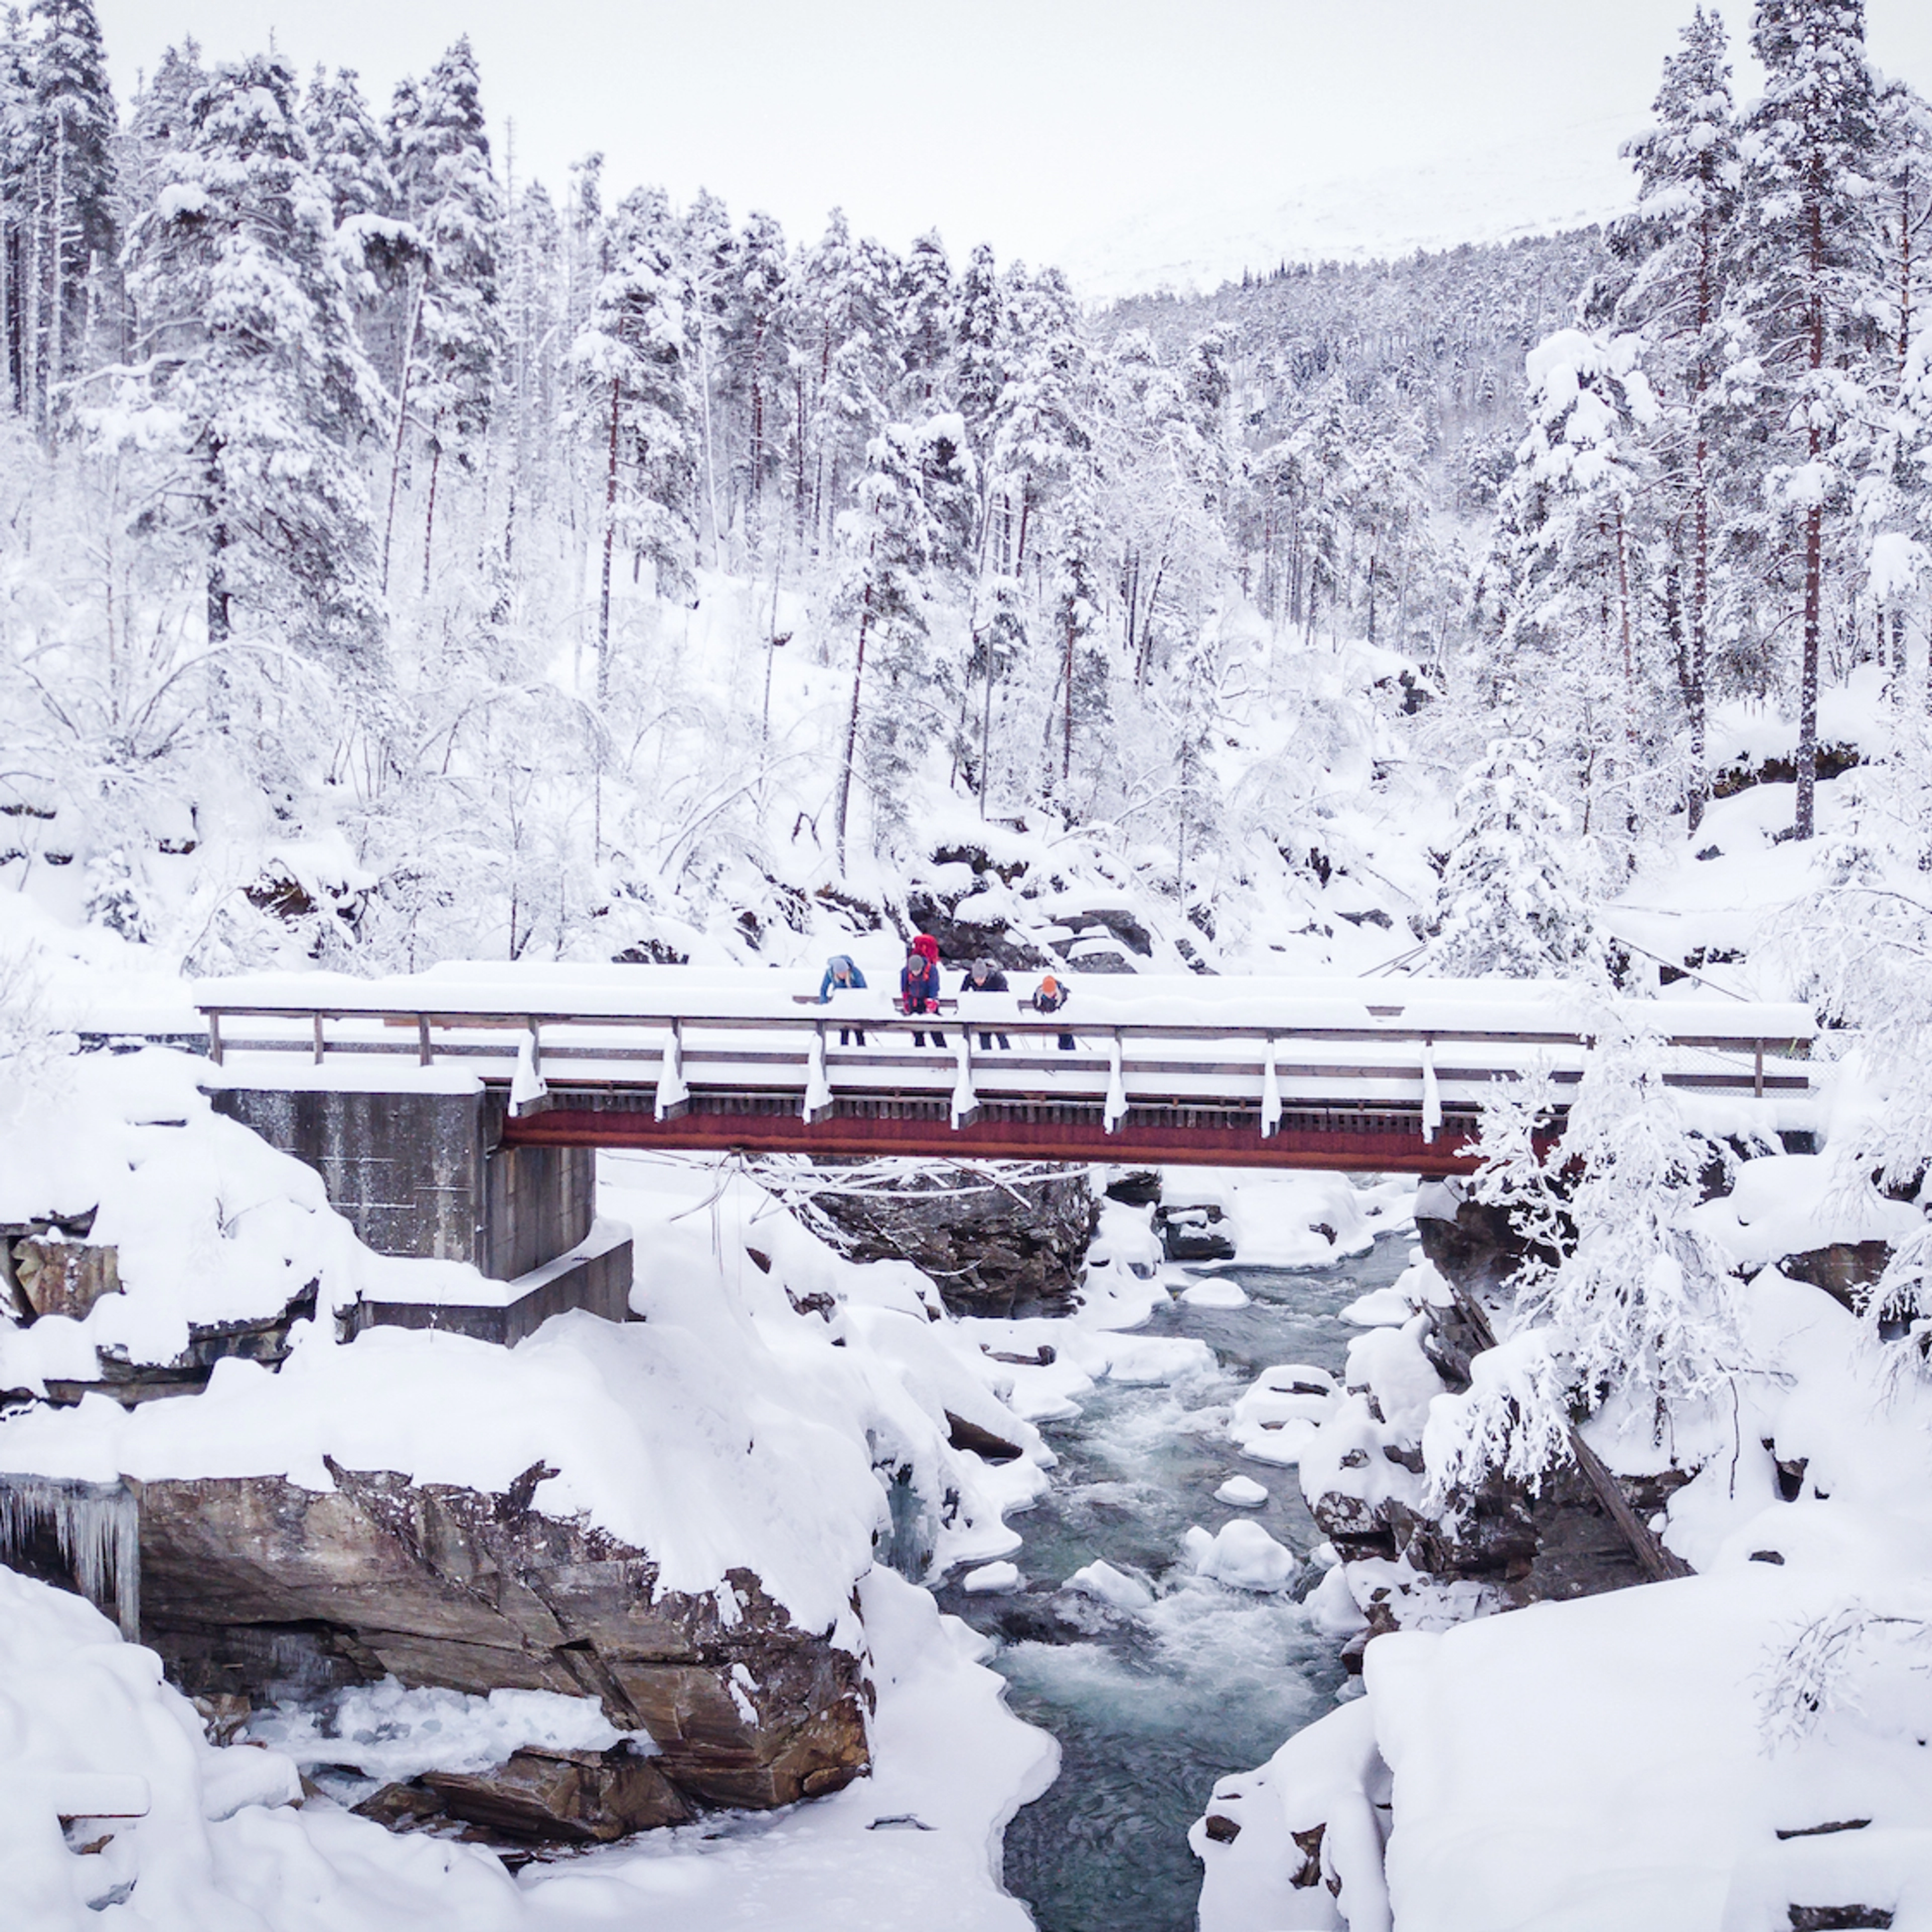 Wintertour auf Schneeschuhen in Raundalen - Voss, Norwegen